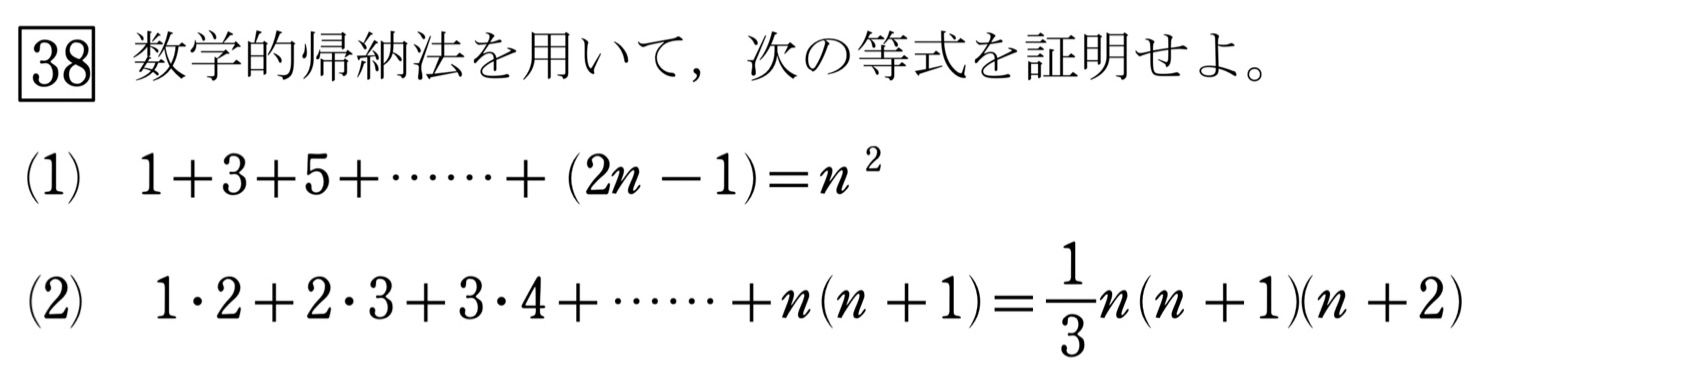 数学的帰納法(等式) 問題